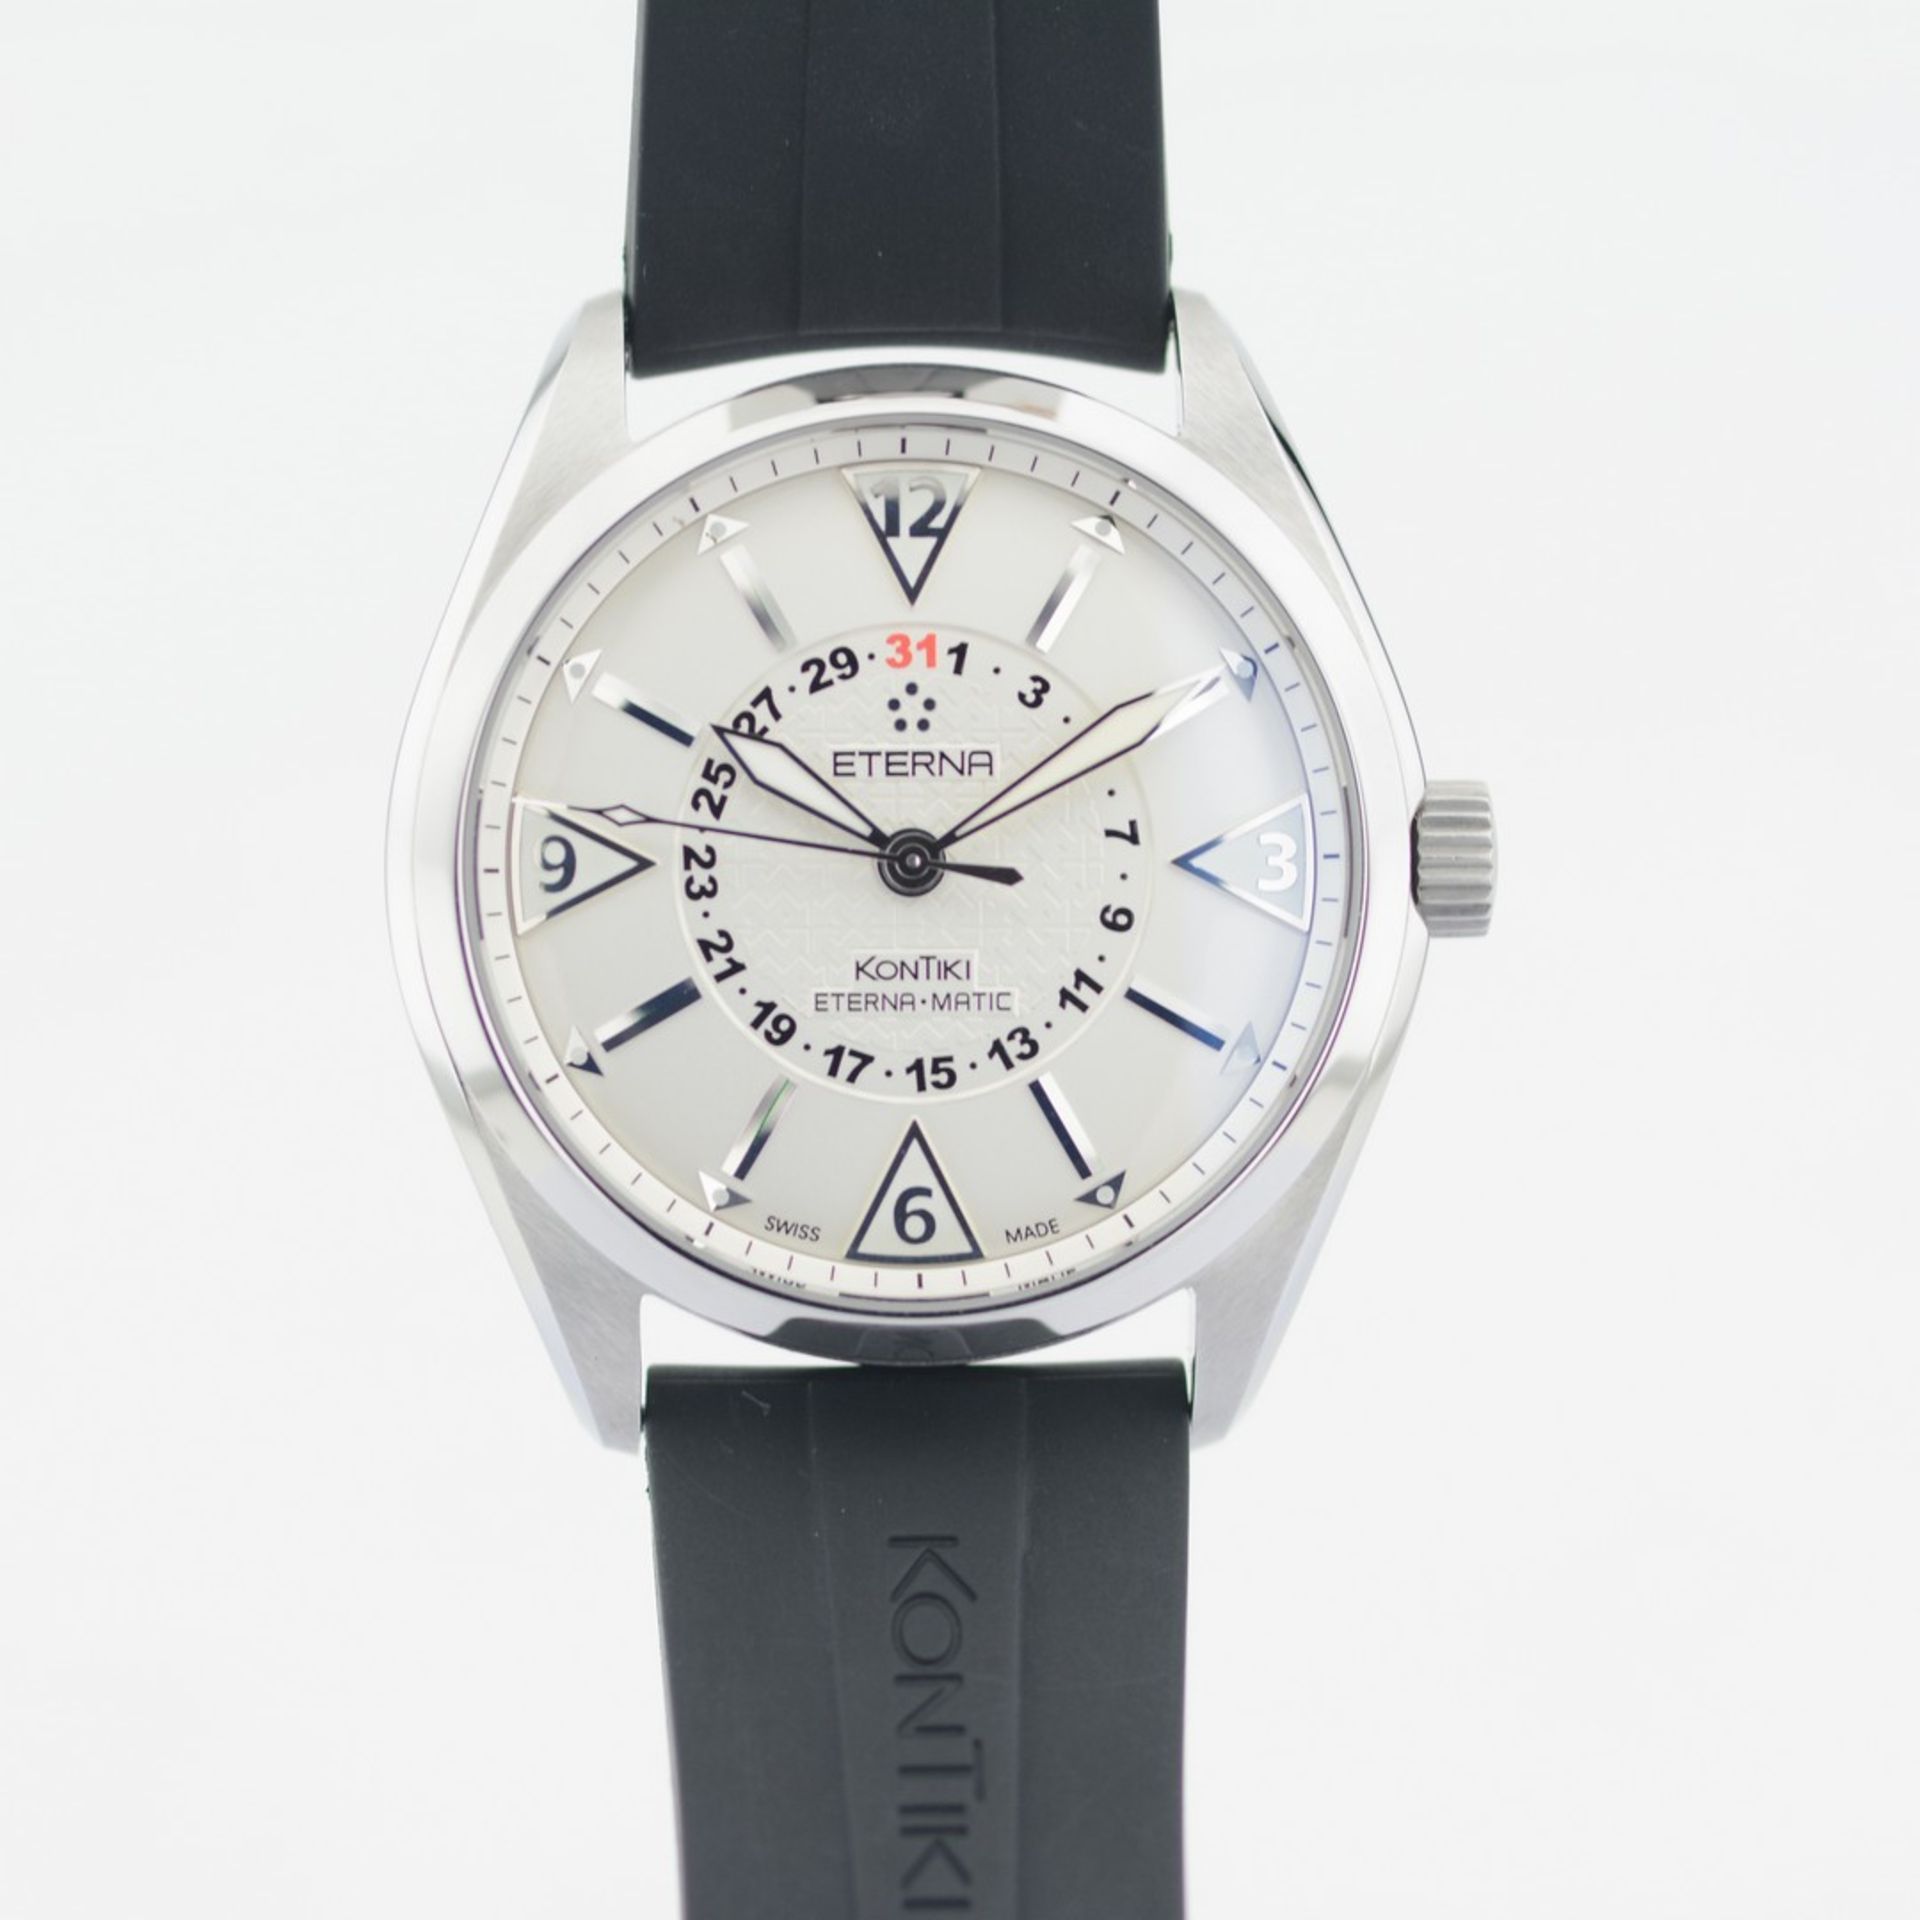 Eterna-Matic / Kontiki - Four Hands - Gentlemen's Steel Wristwatch - Image 8 of 8